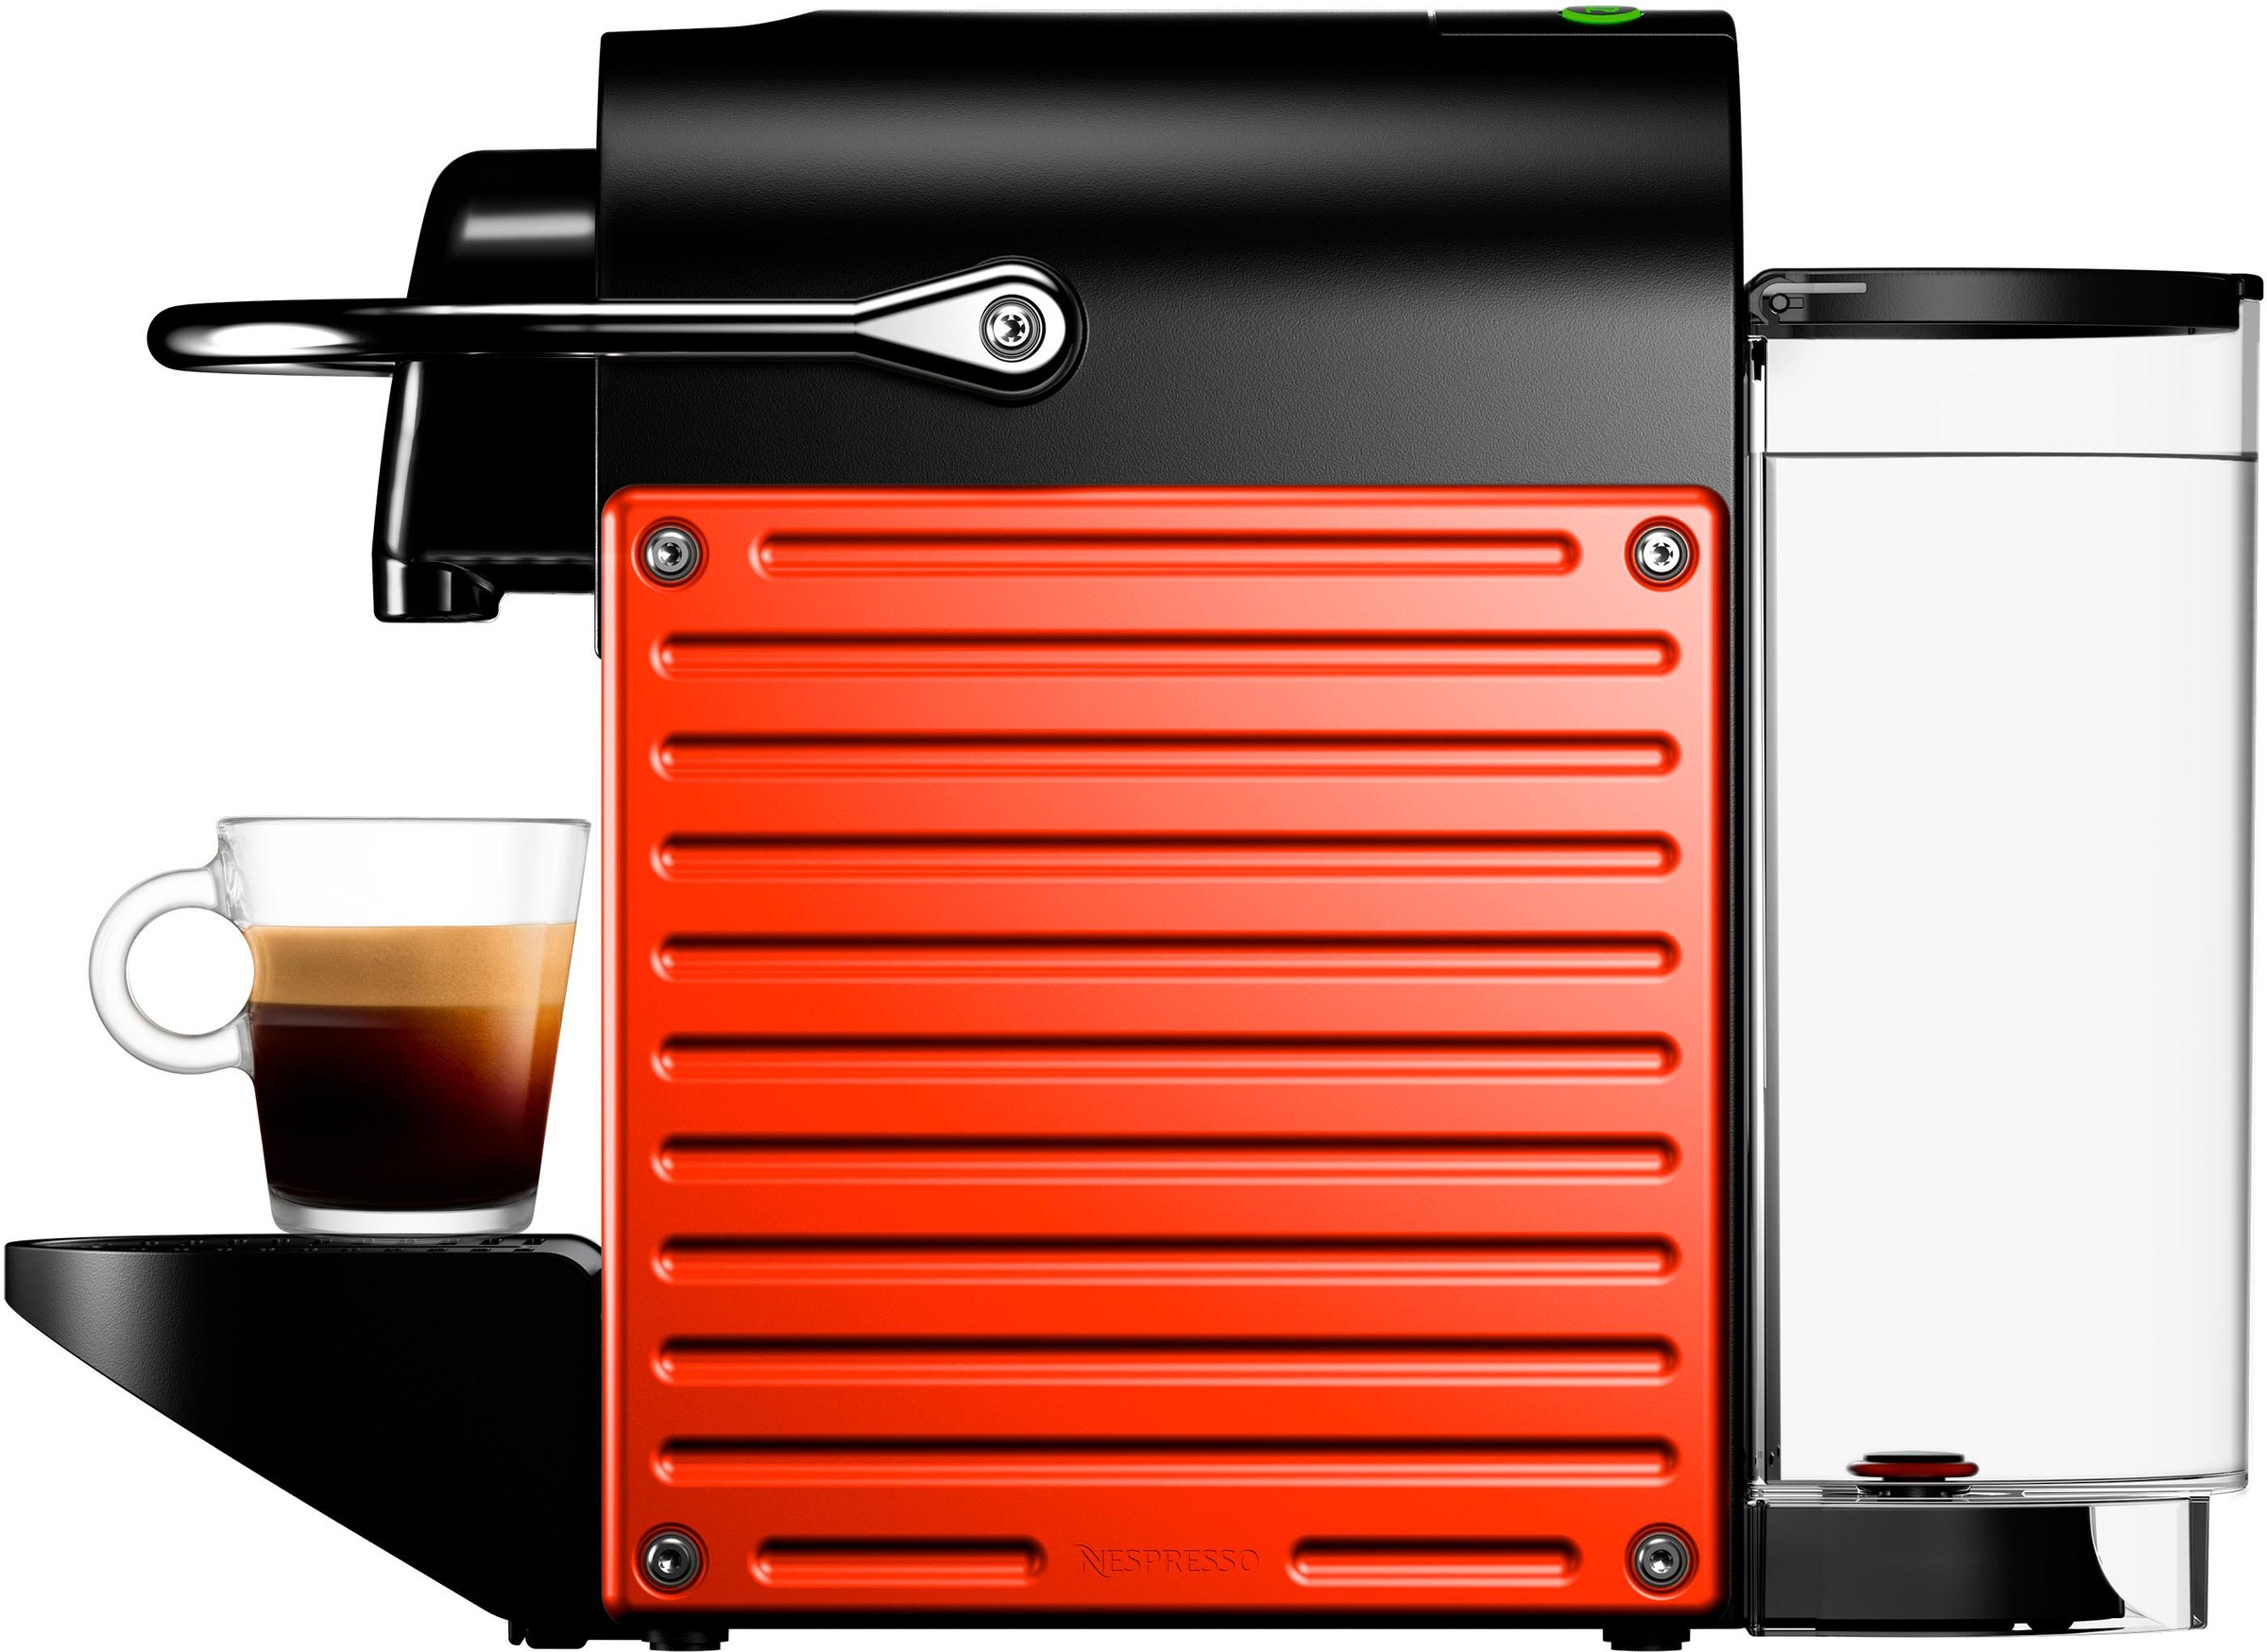 Nespresso Kapselmaschine »Pixie XN3045 von Krups, Red«, inkl. Willkommenspaket mit 7 Kapseln